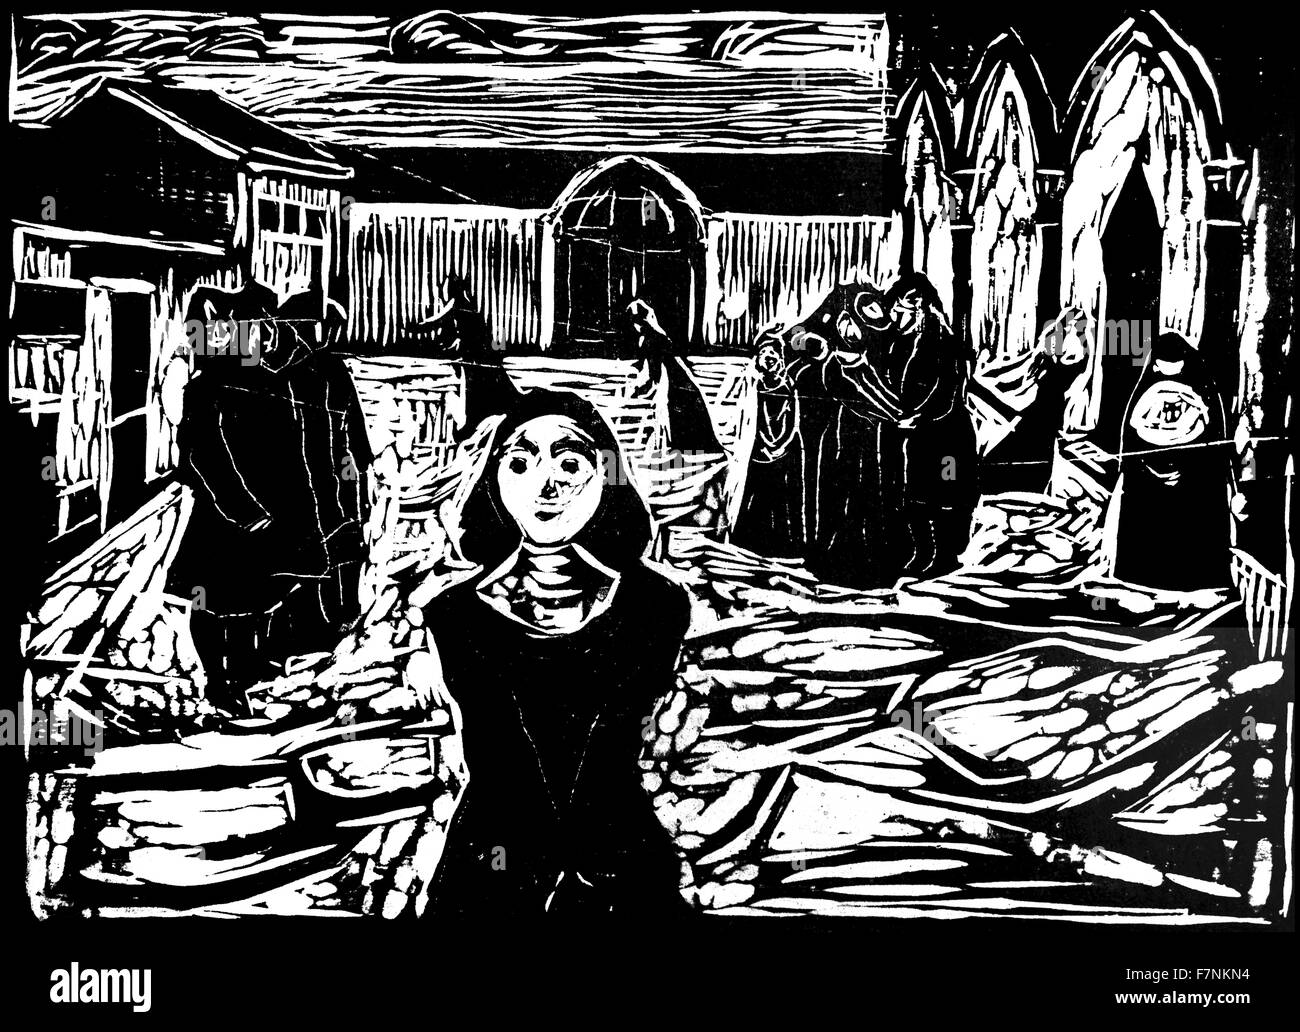 Gravure sur bois représentant des religieuses dans la cour d'un couvent d'Edvard Munch (1863-1944) peintre et graveur norvégien le plus connu pour sa peinture intitulée "Le Cri". Il a été grandement influencé par l'expressionnisme allemand. Datée 1905 Banque D'Images